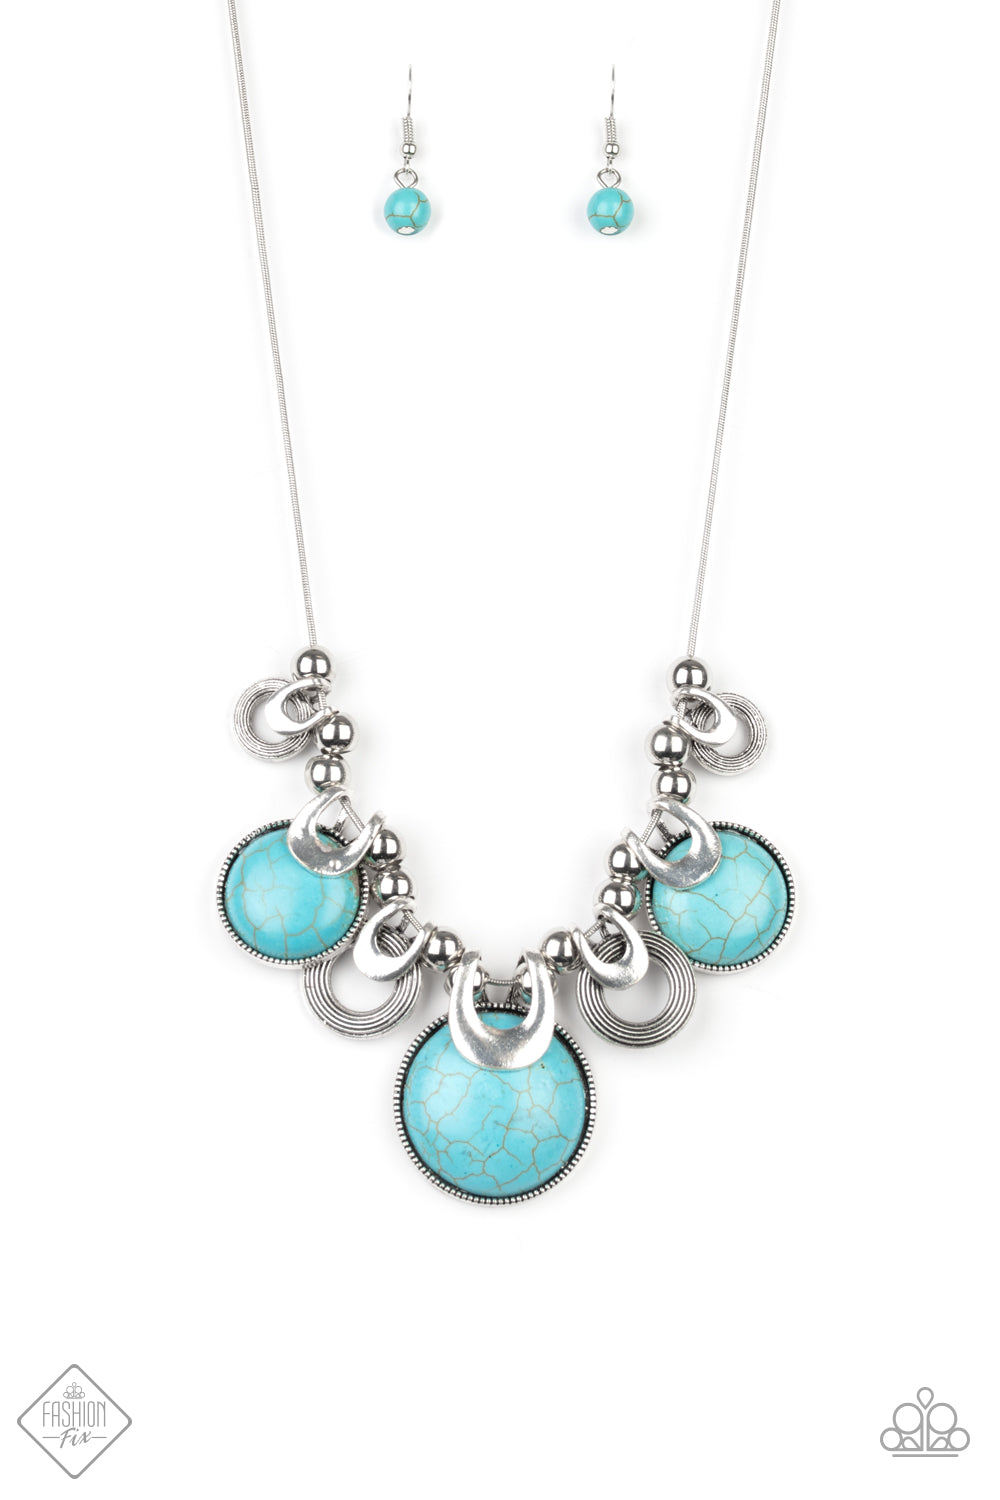 Elemental Goddess Necklace__Blue